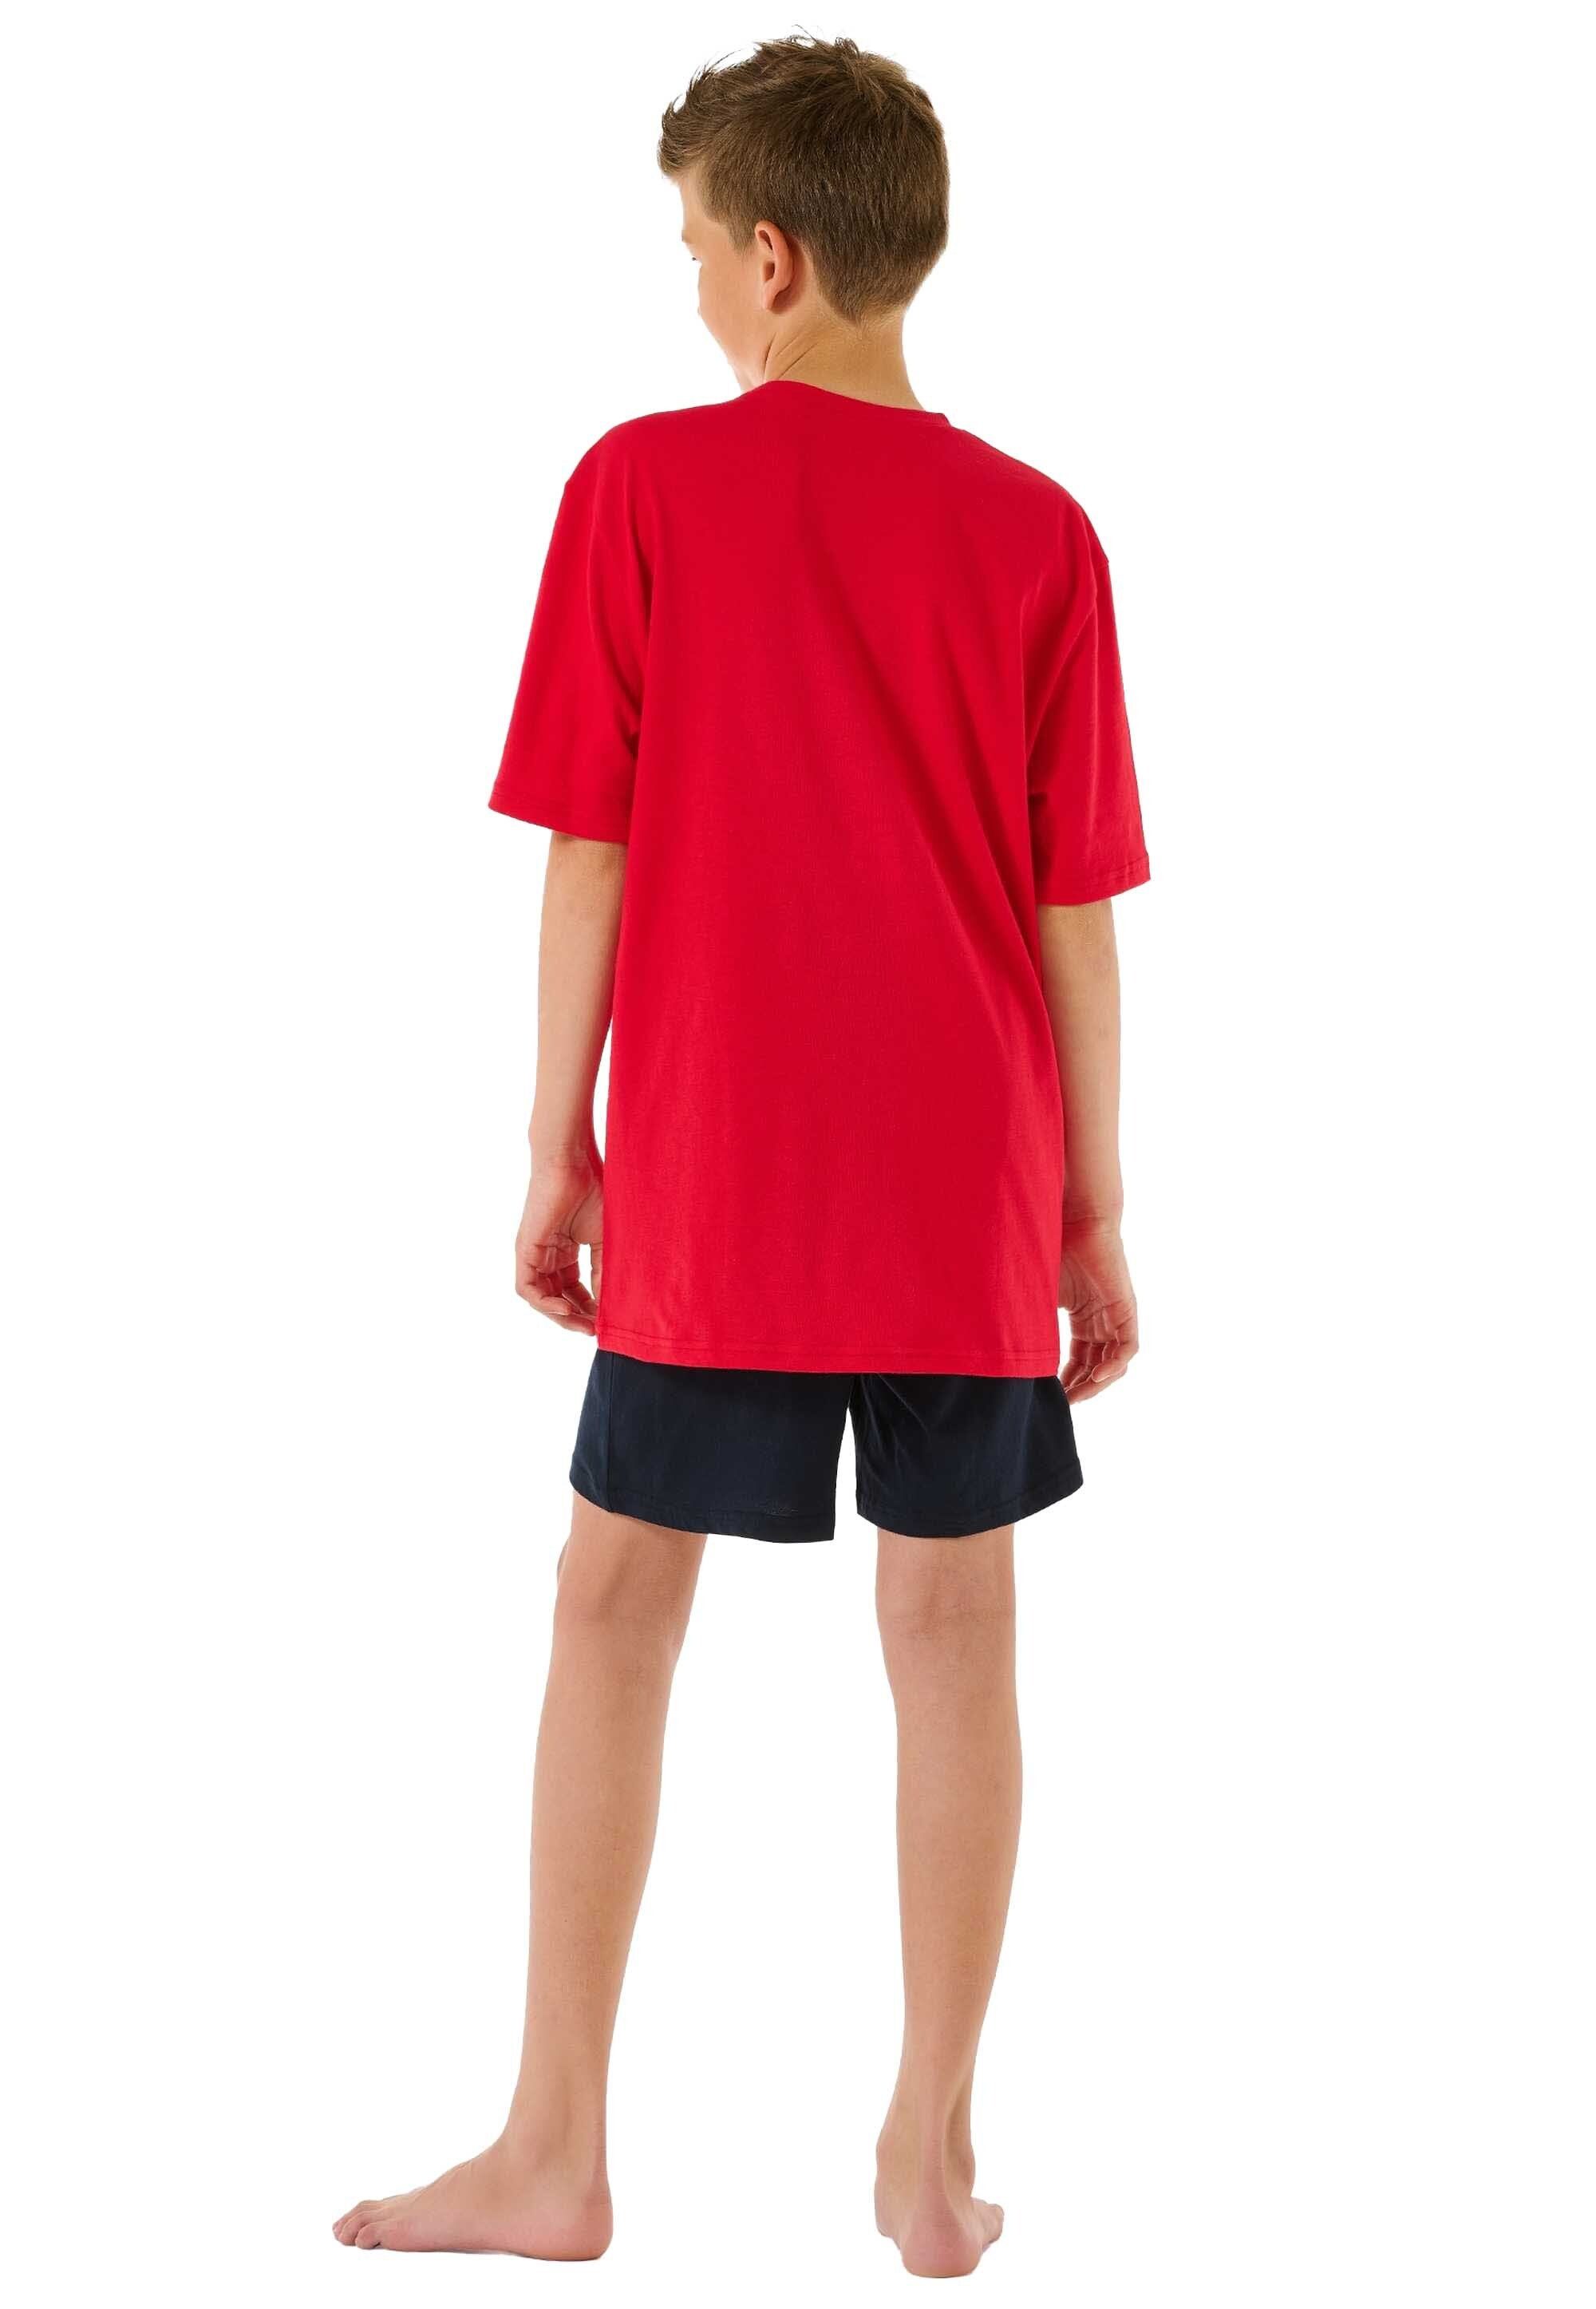 Pyjama Rot/Dunkelblau Kinder Set 2-tlg. kurz, Schlafanzug Schiesser Jungen -